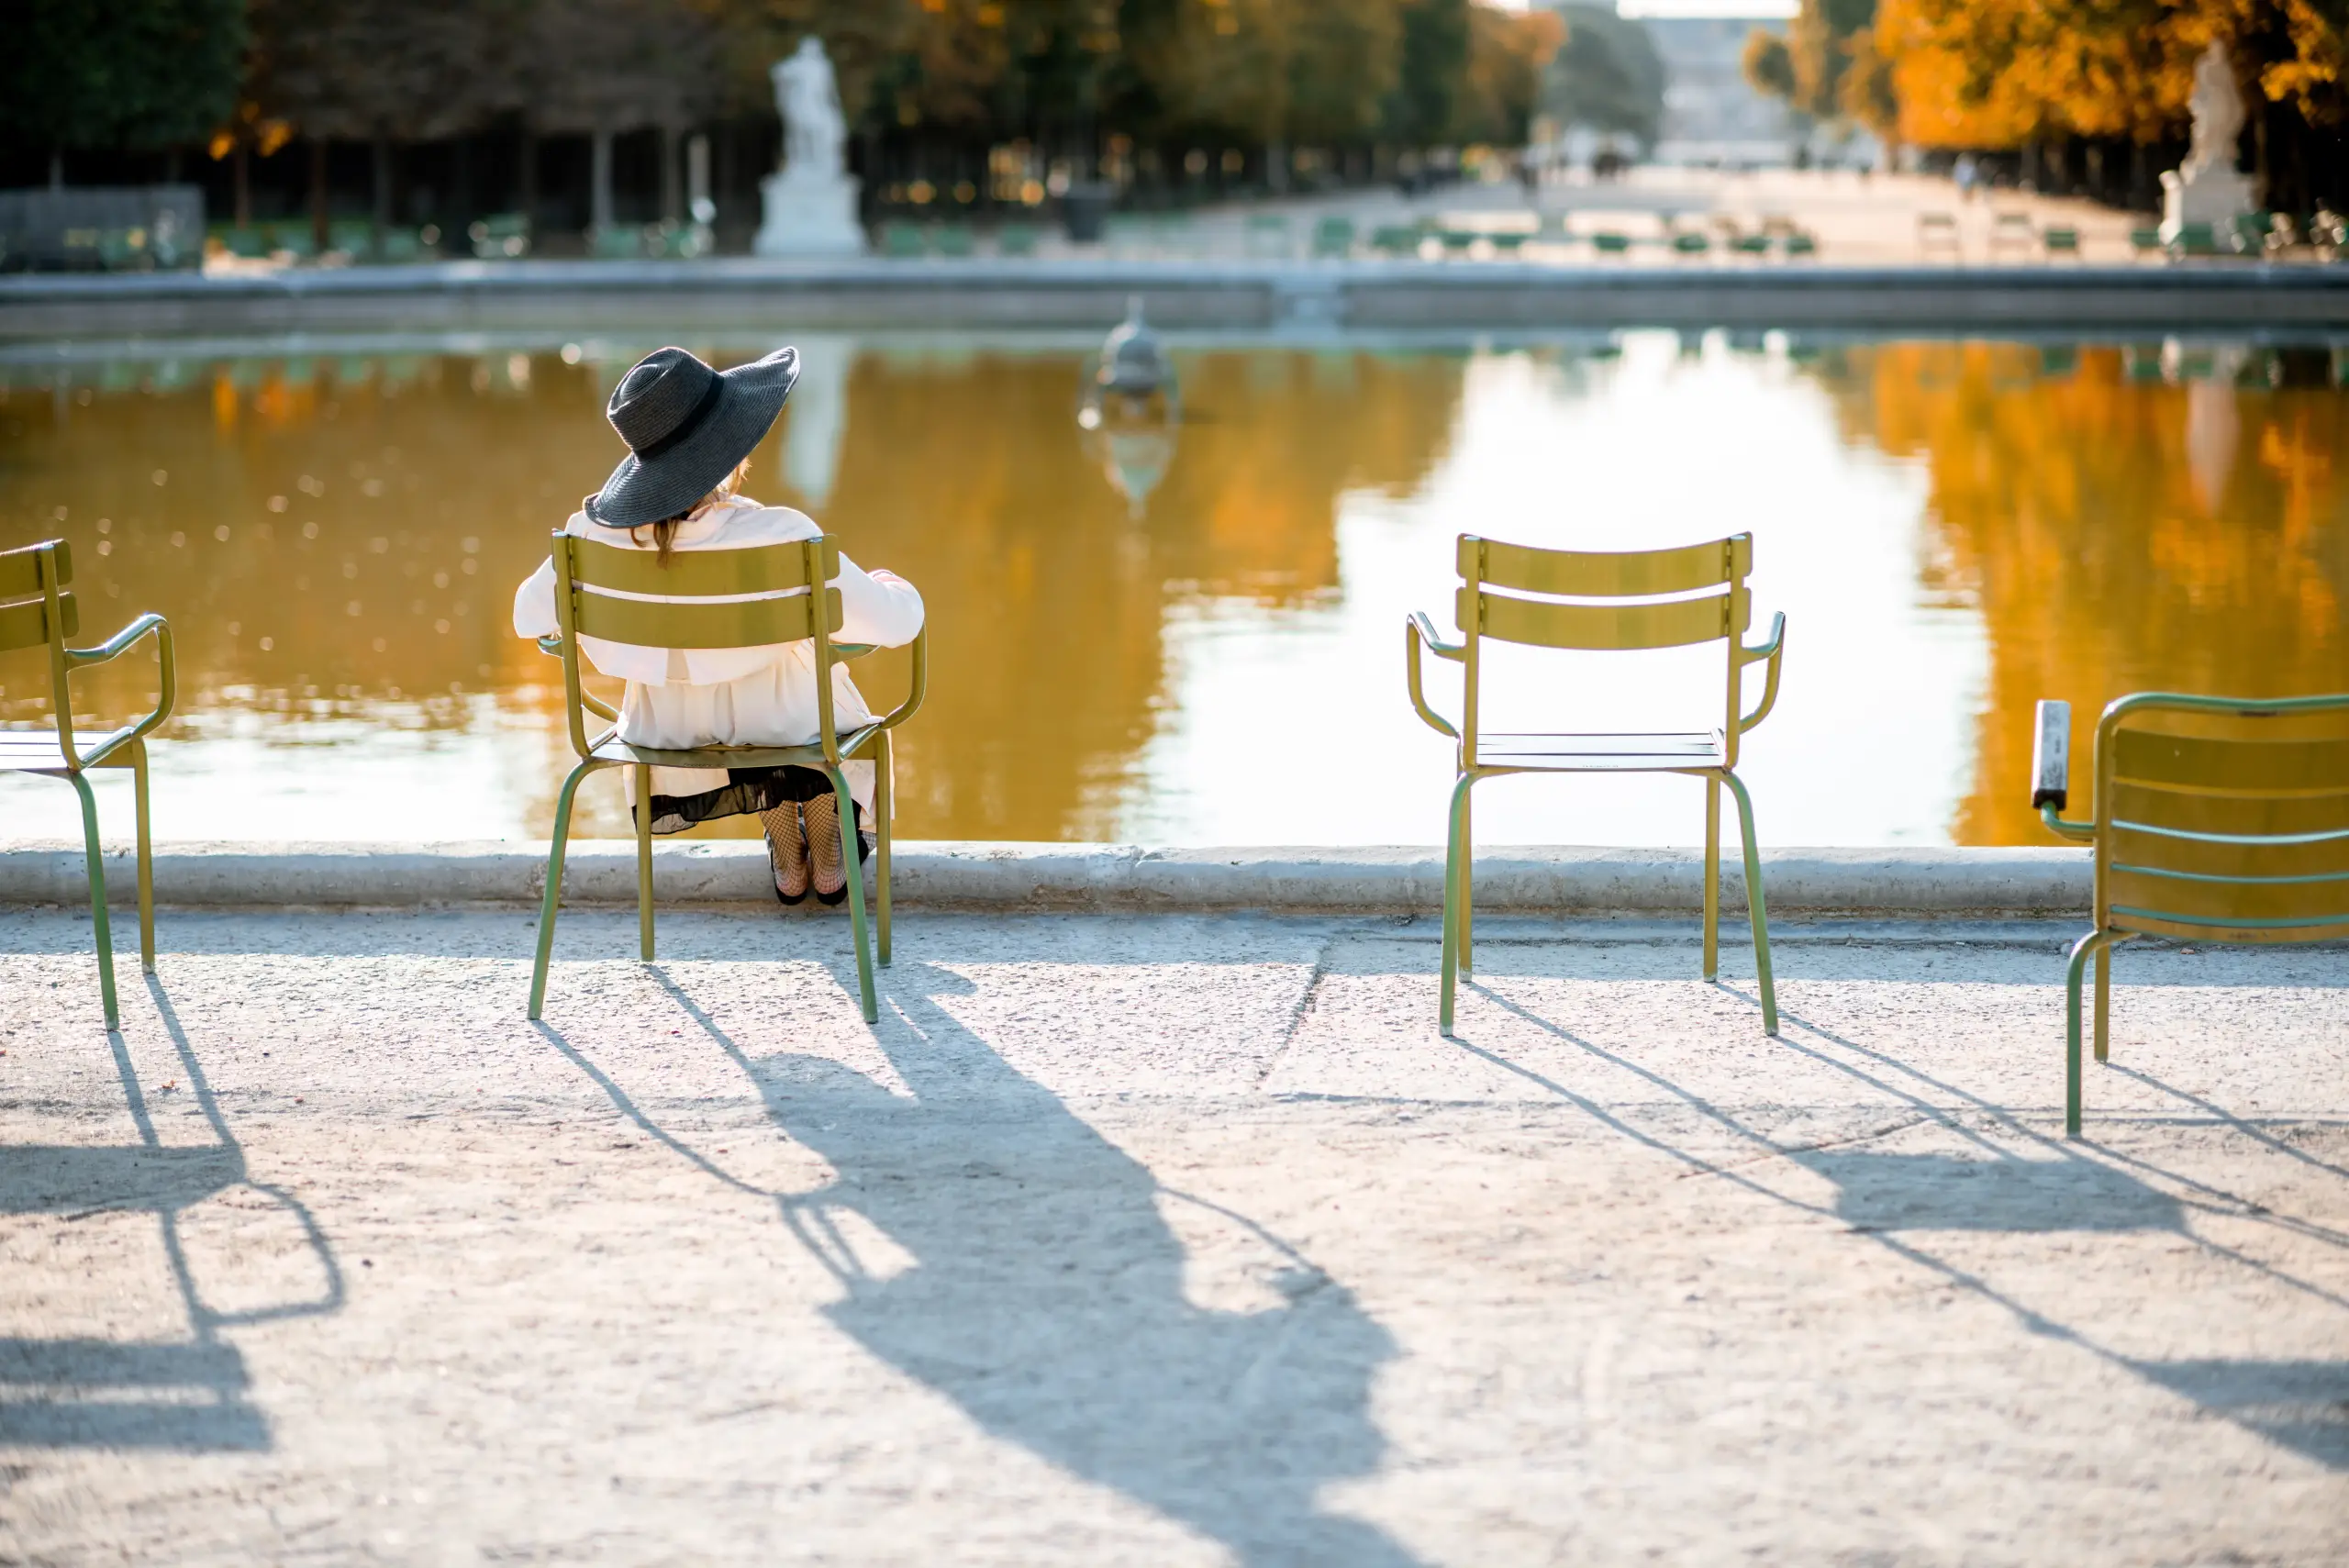 Paris'in Kalbinde Bir Vaha: Tuileries Bahçesi Hakkında Her Şey